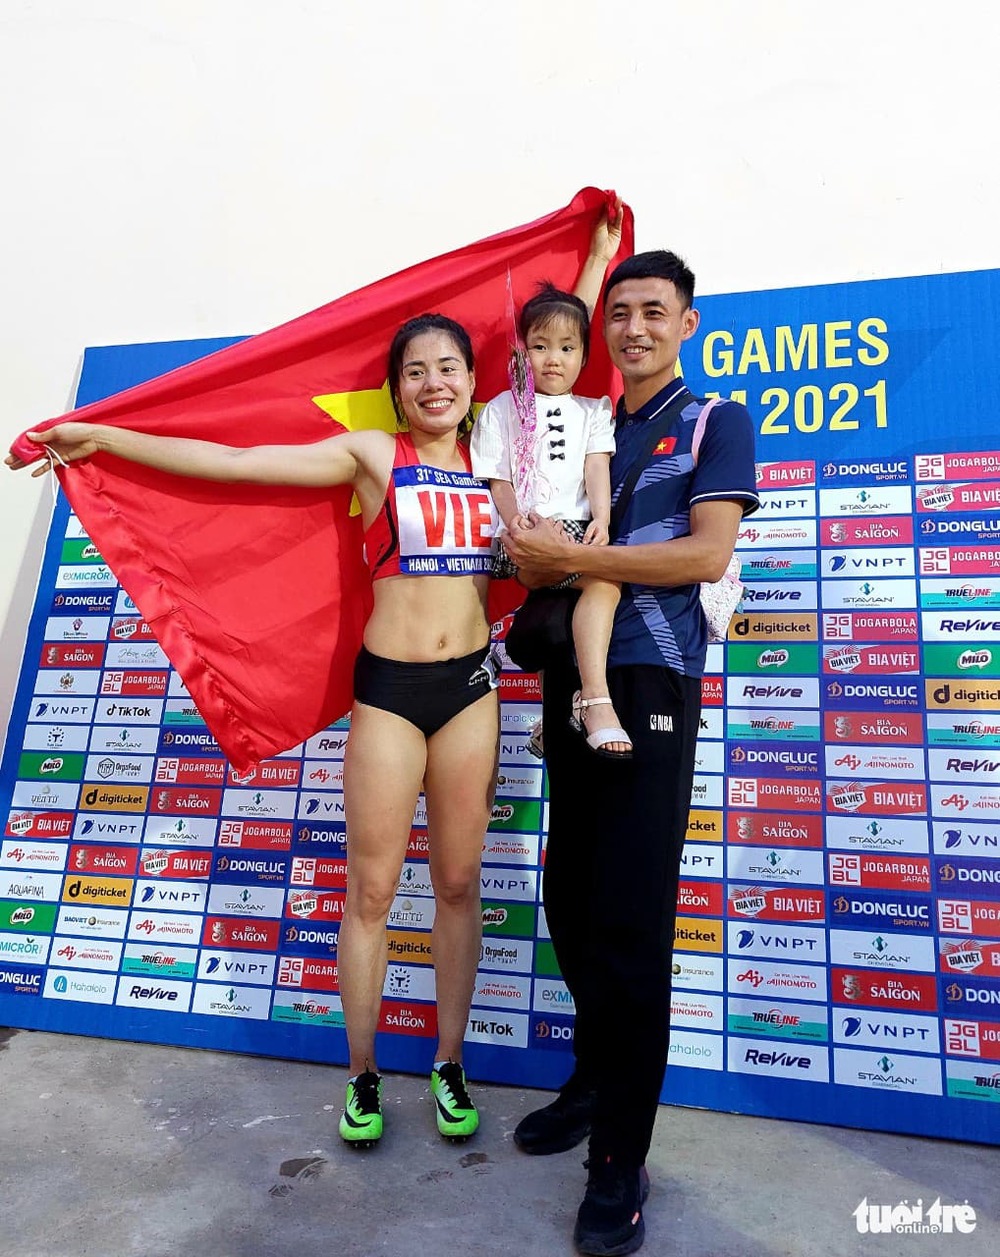  
VĐV Nguyễn Thị Huyền hạnh phúc bên gia đình nhỏ của mình sau khi giành huy chương vàng. (Ảnh: Báo Tuổi trẻ)